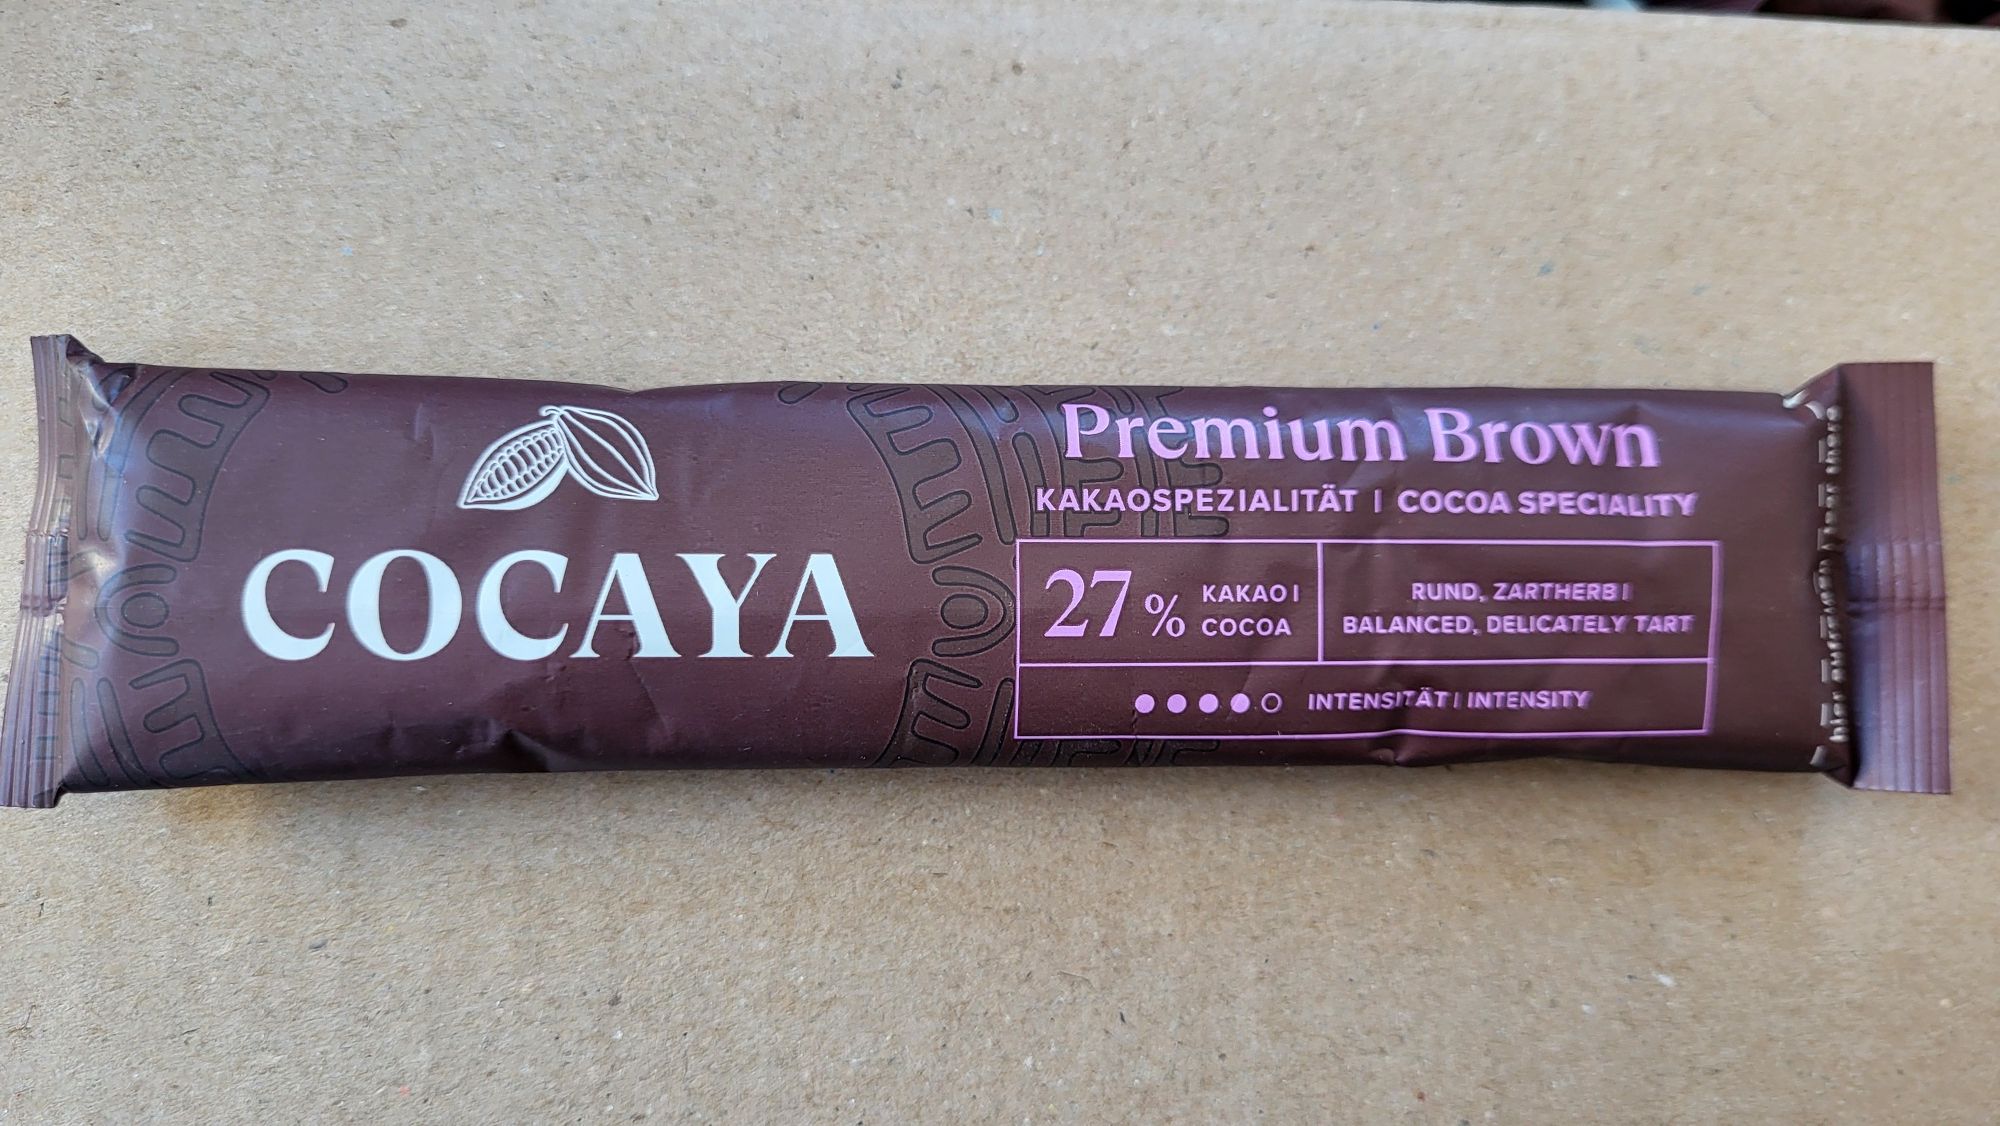 Cocaya Premium Brown 100 saszetek, czekolada do picia, kakao premium